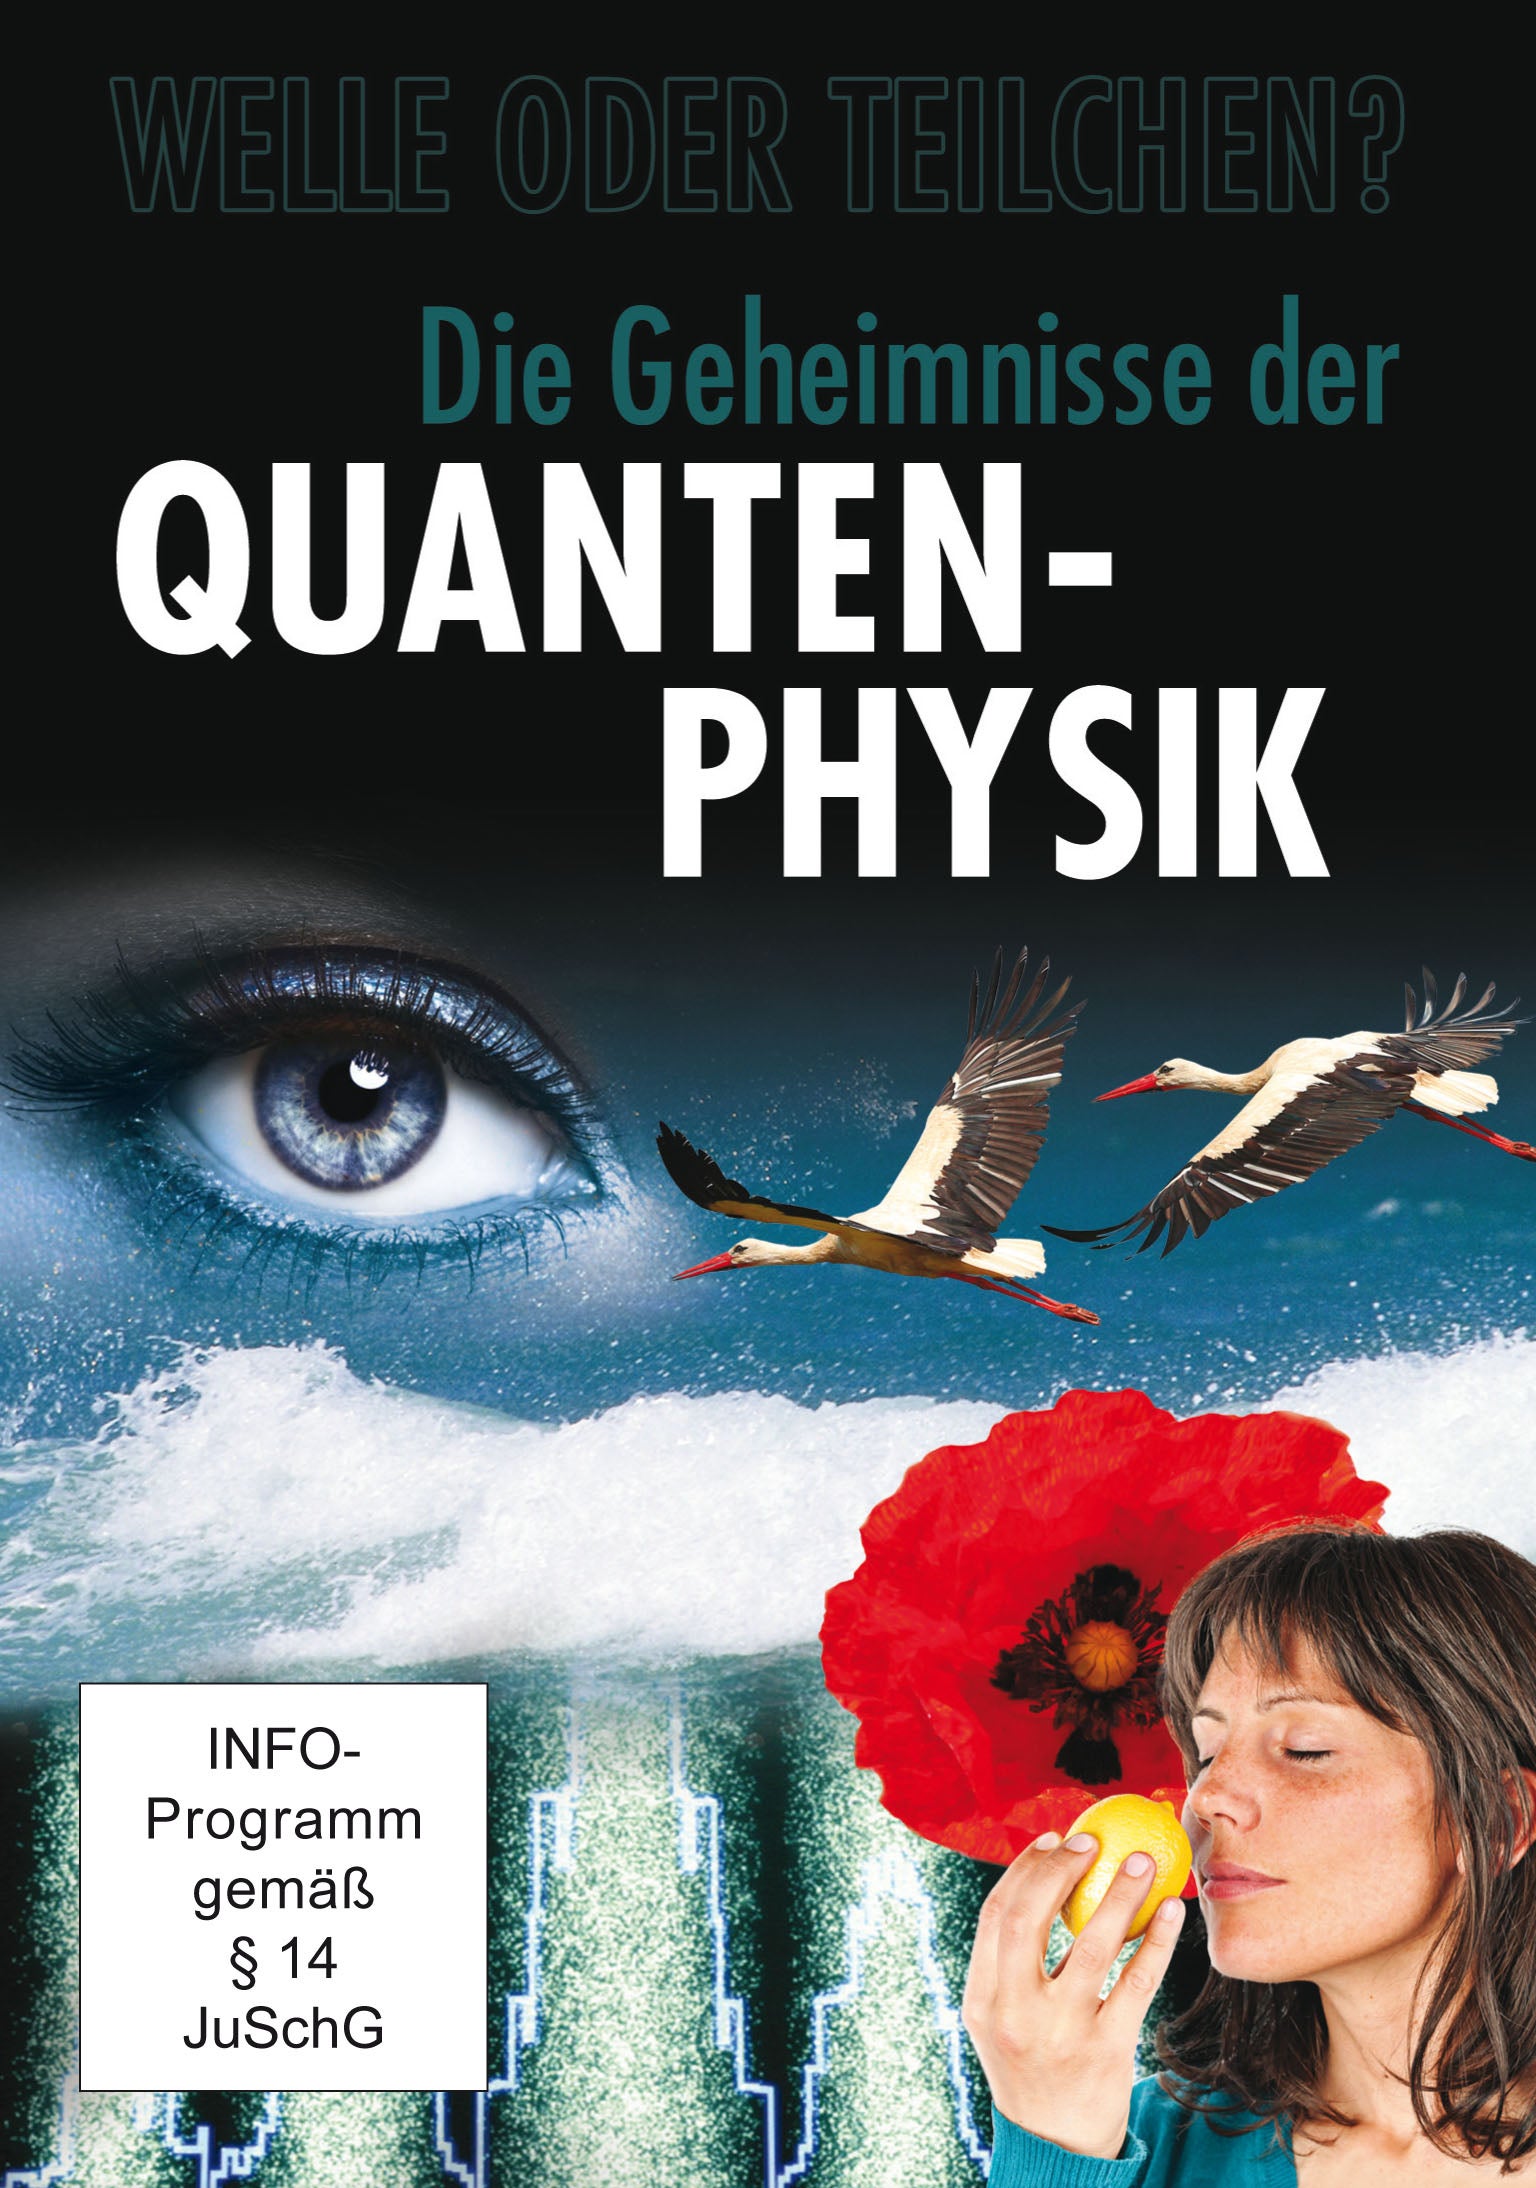 Die Geheimnisse der Quanten-Physik [DVD]